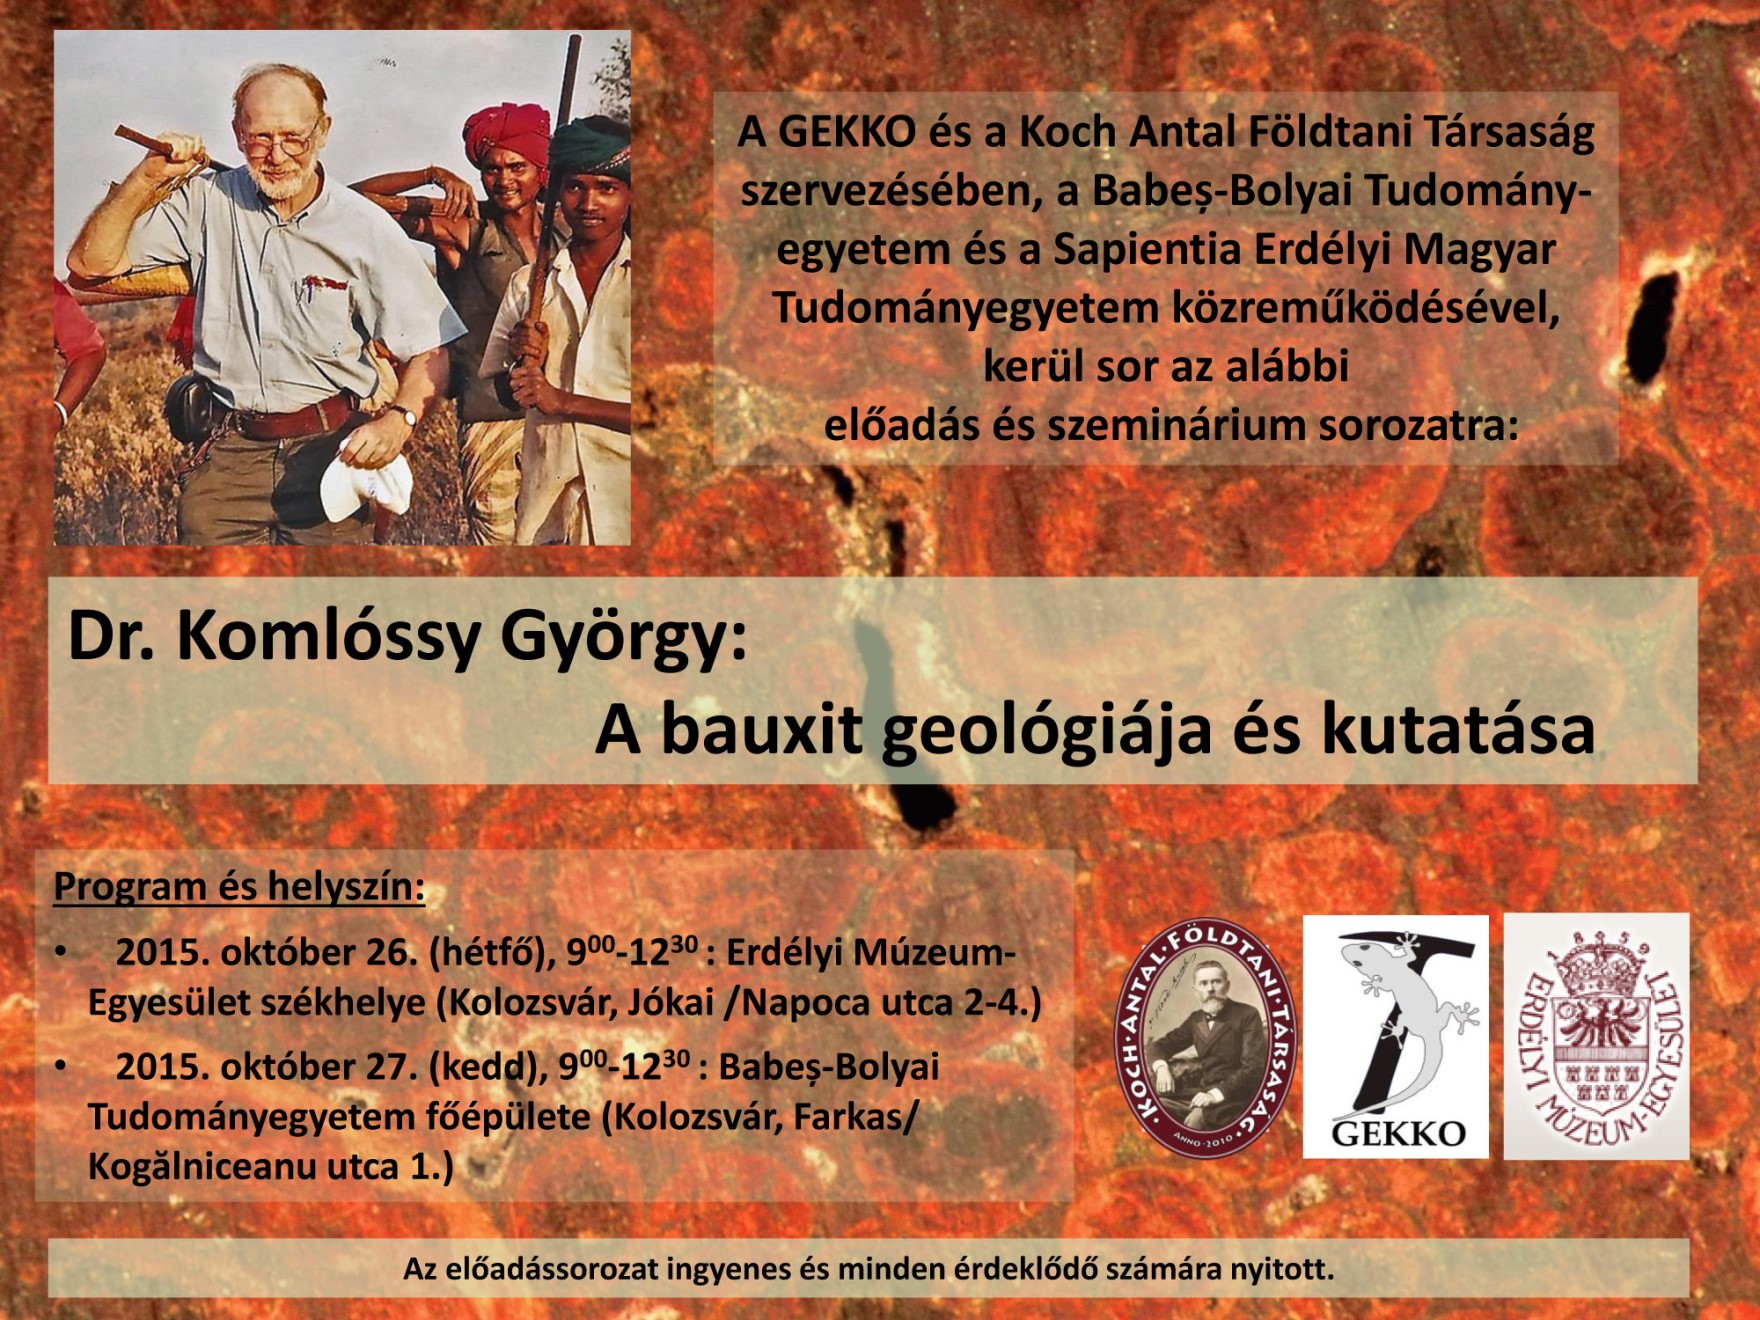 Dr. Komlóssy Görgy: A bauxit geológiája és kutatása